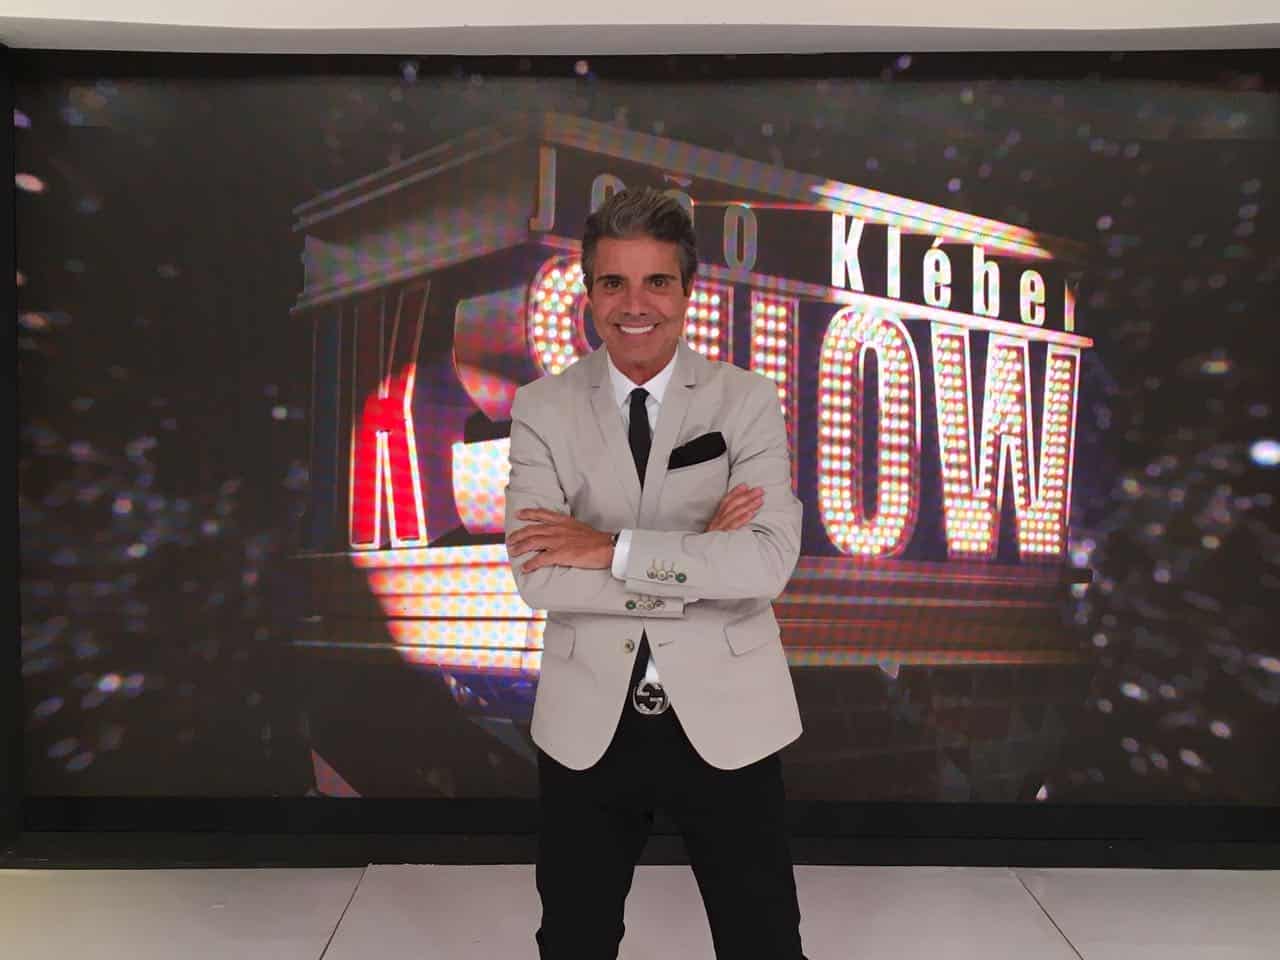 Audiência da TV: “João Kléber Show” atinge segundo lugar por 5 minutos